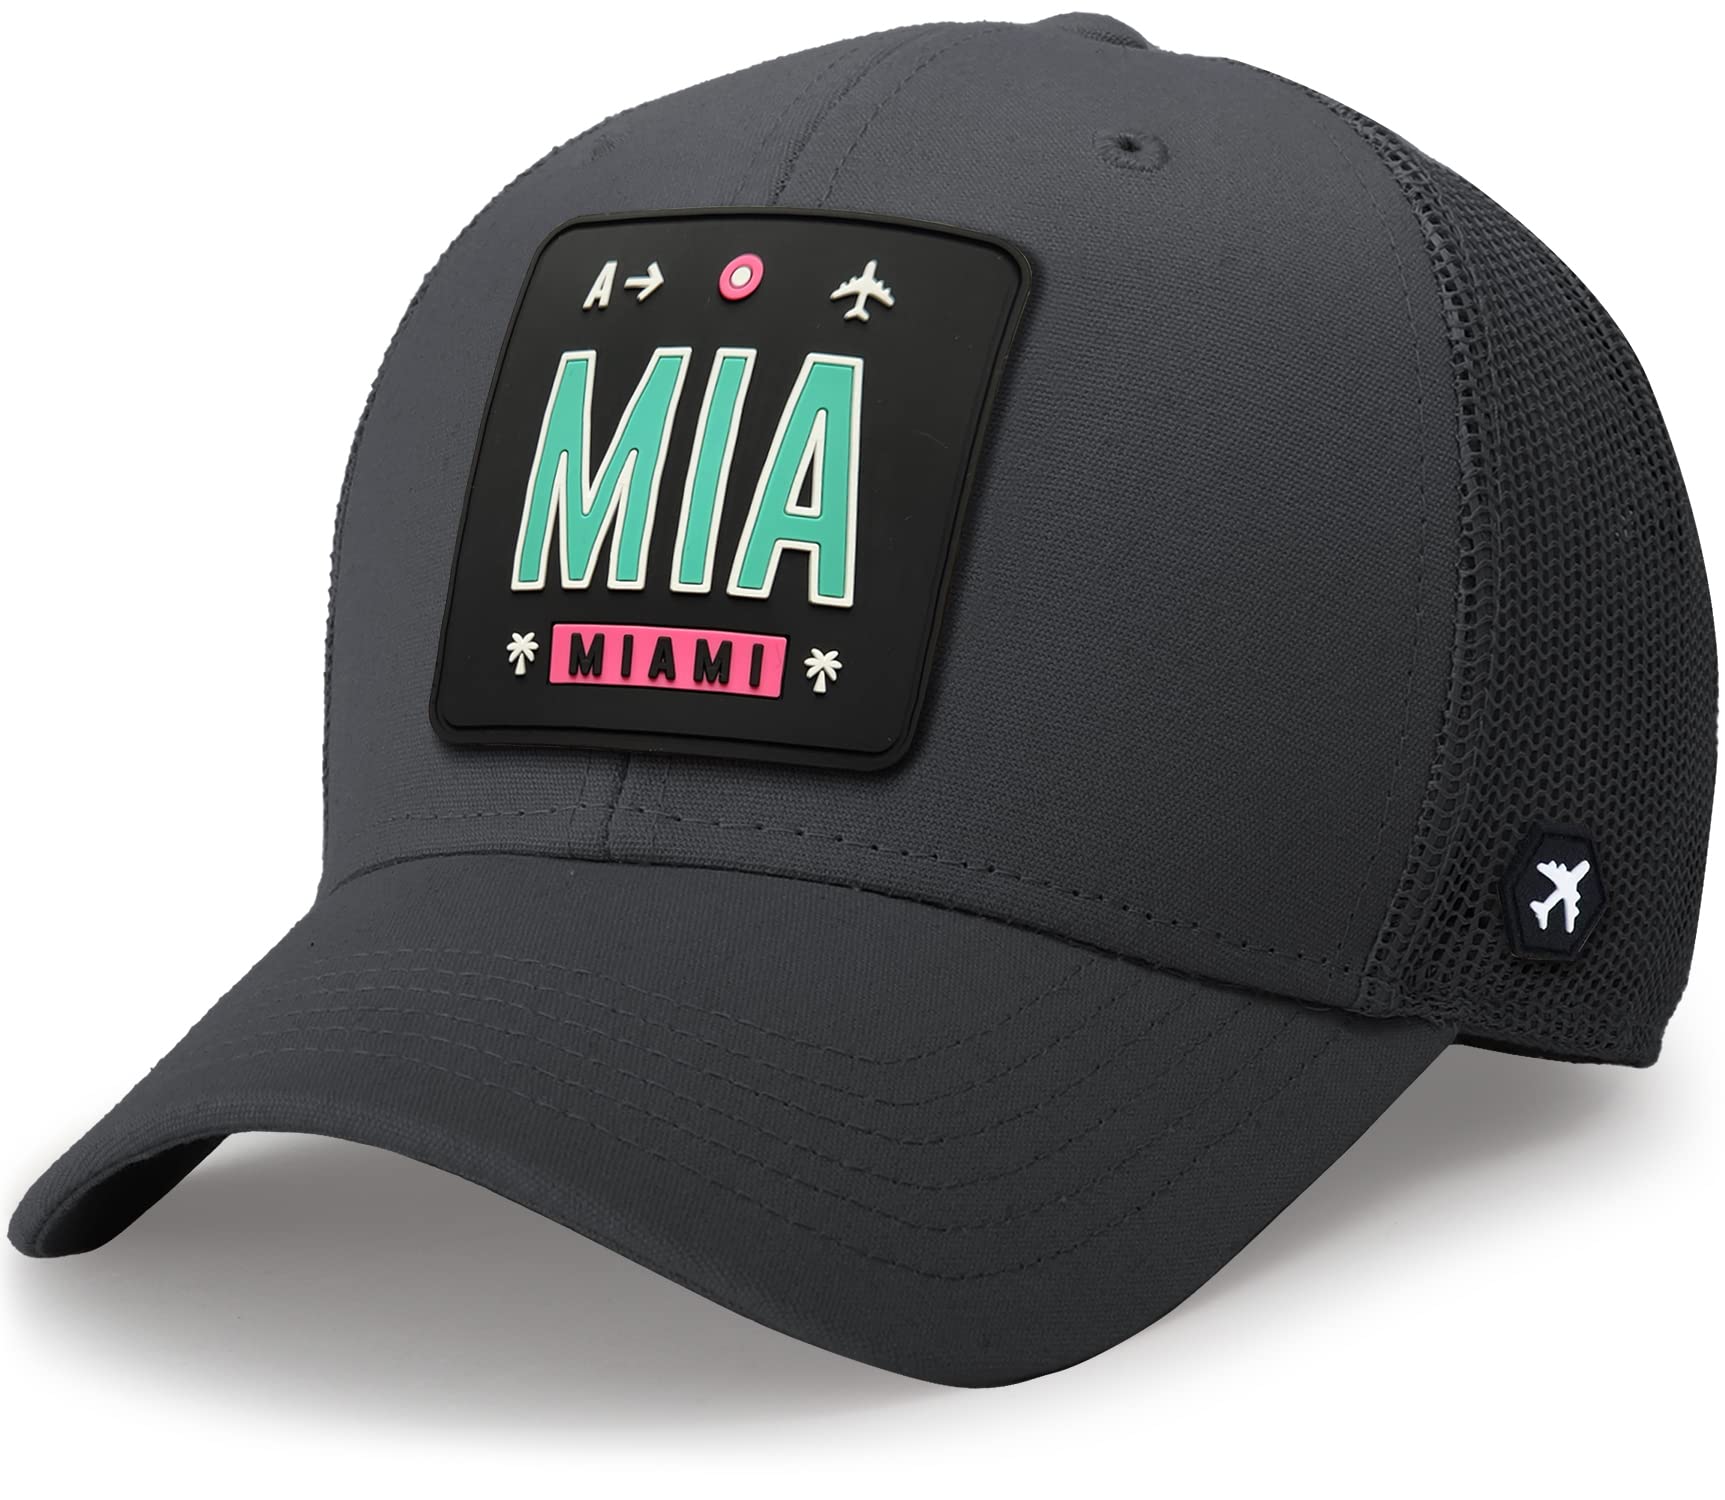 送料無料We Fly Trucker Hat for Men Women Adjustable Baseball Hat Mesh Snapback Travel Essential Hat Miami Charcoal